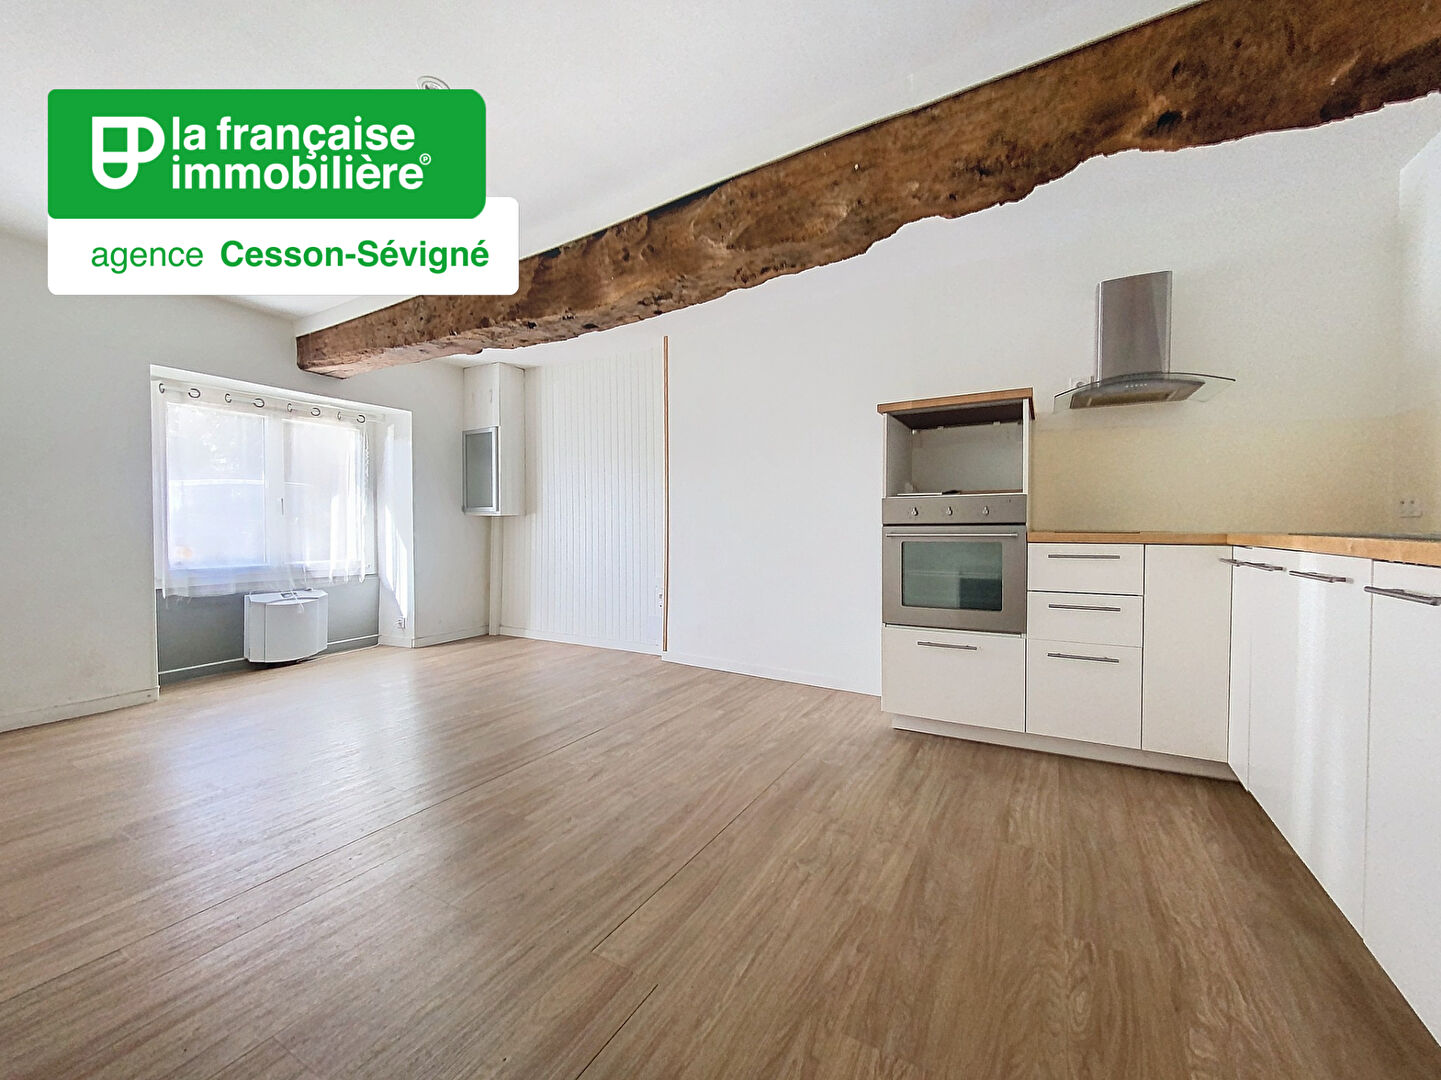 Vente Appartement 36m² à Chantepie (35135) - La Française Immobilière